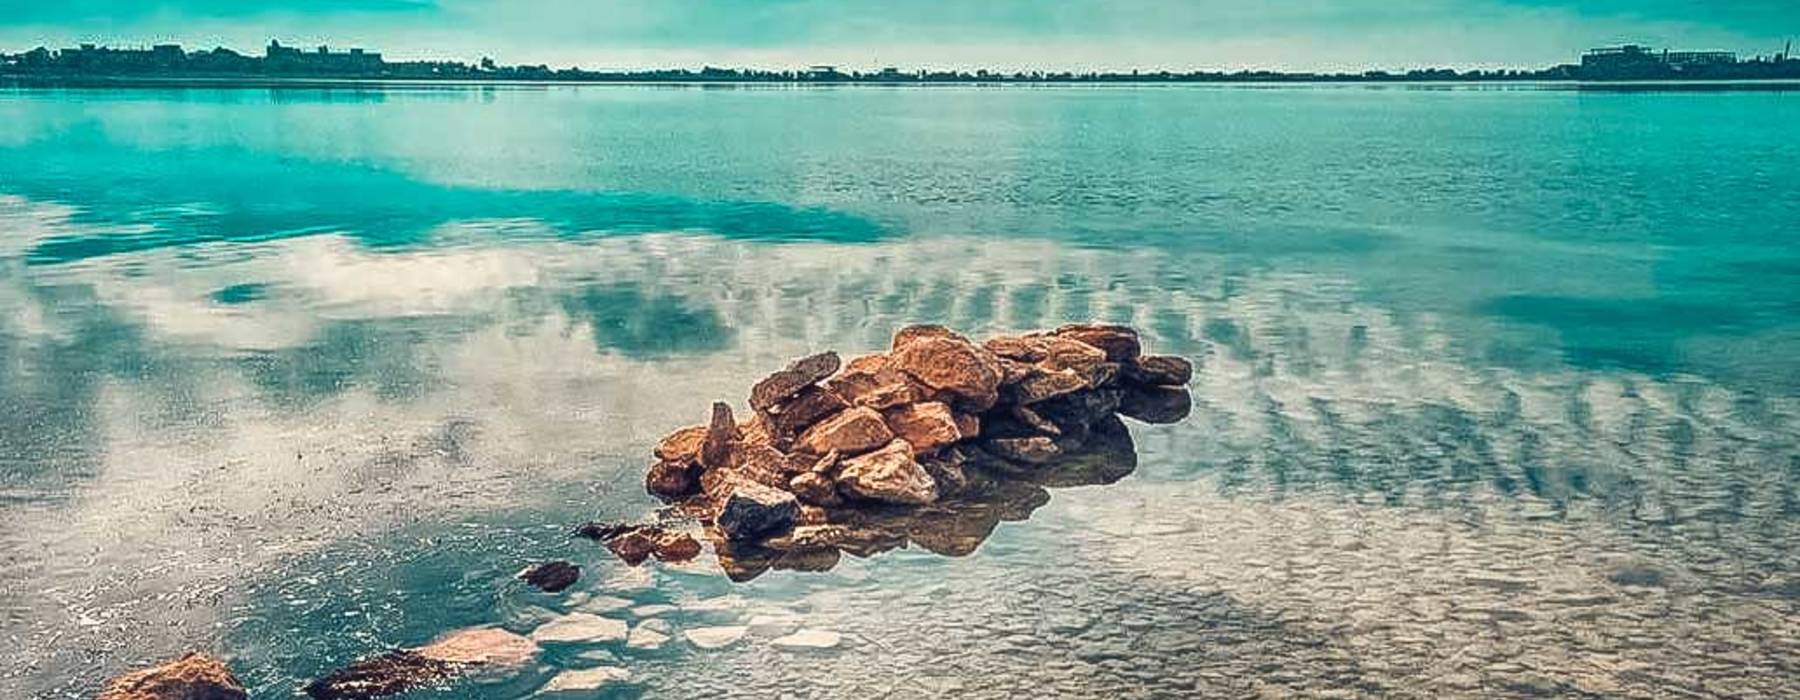 Мойнакское озеро с целебной водой – рапой